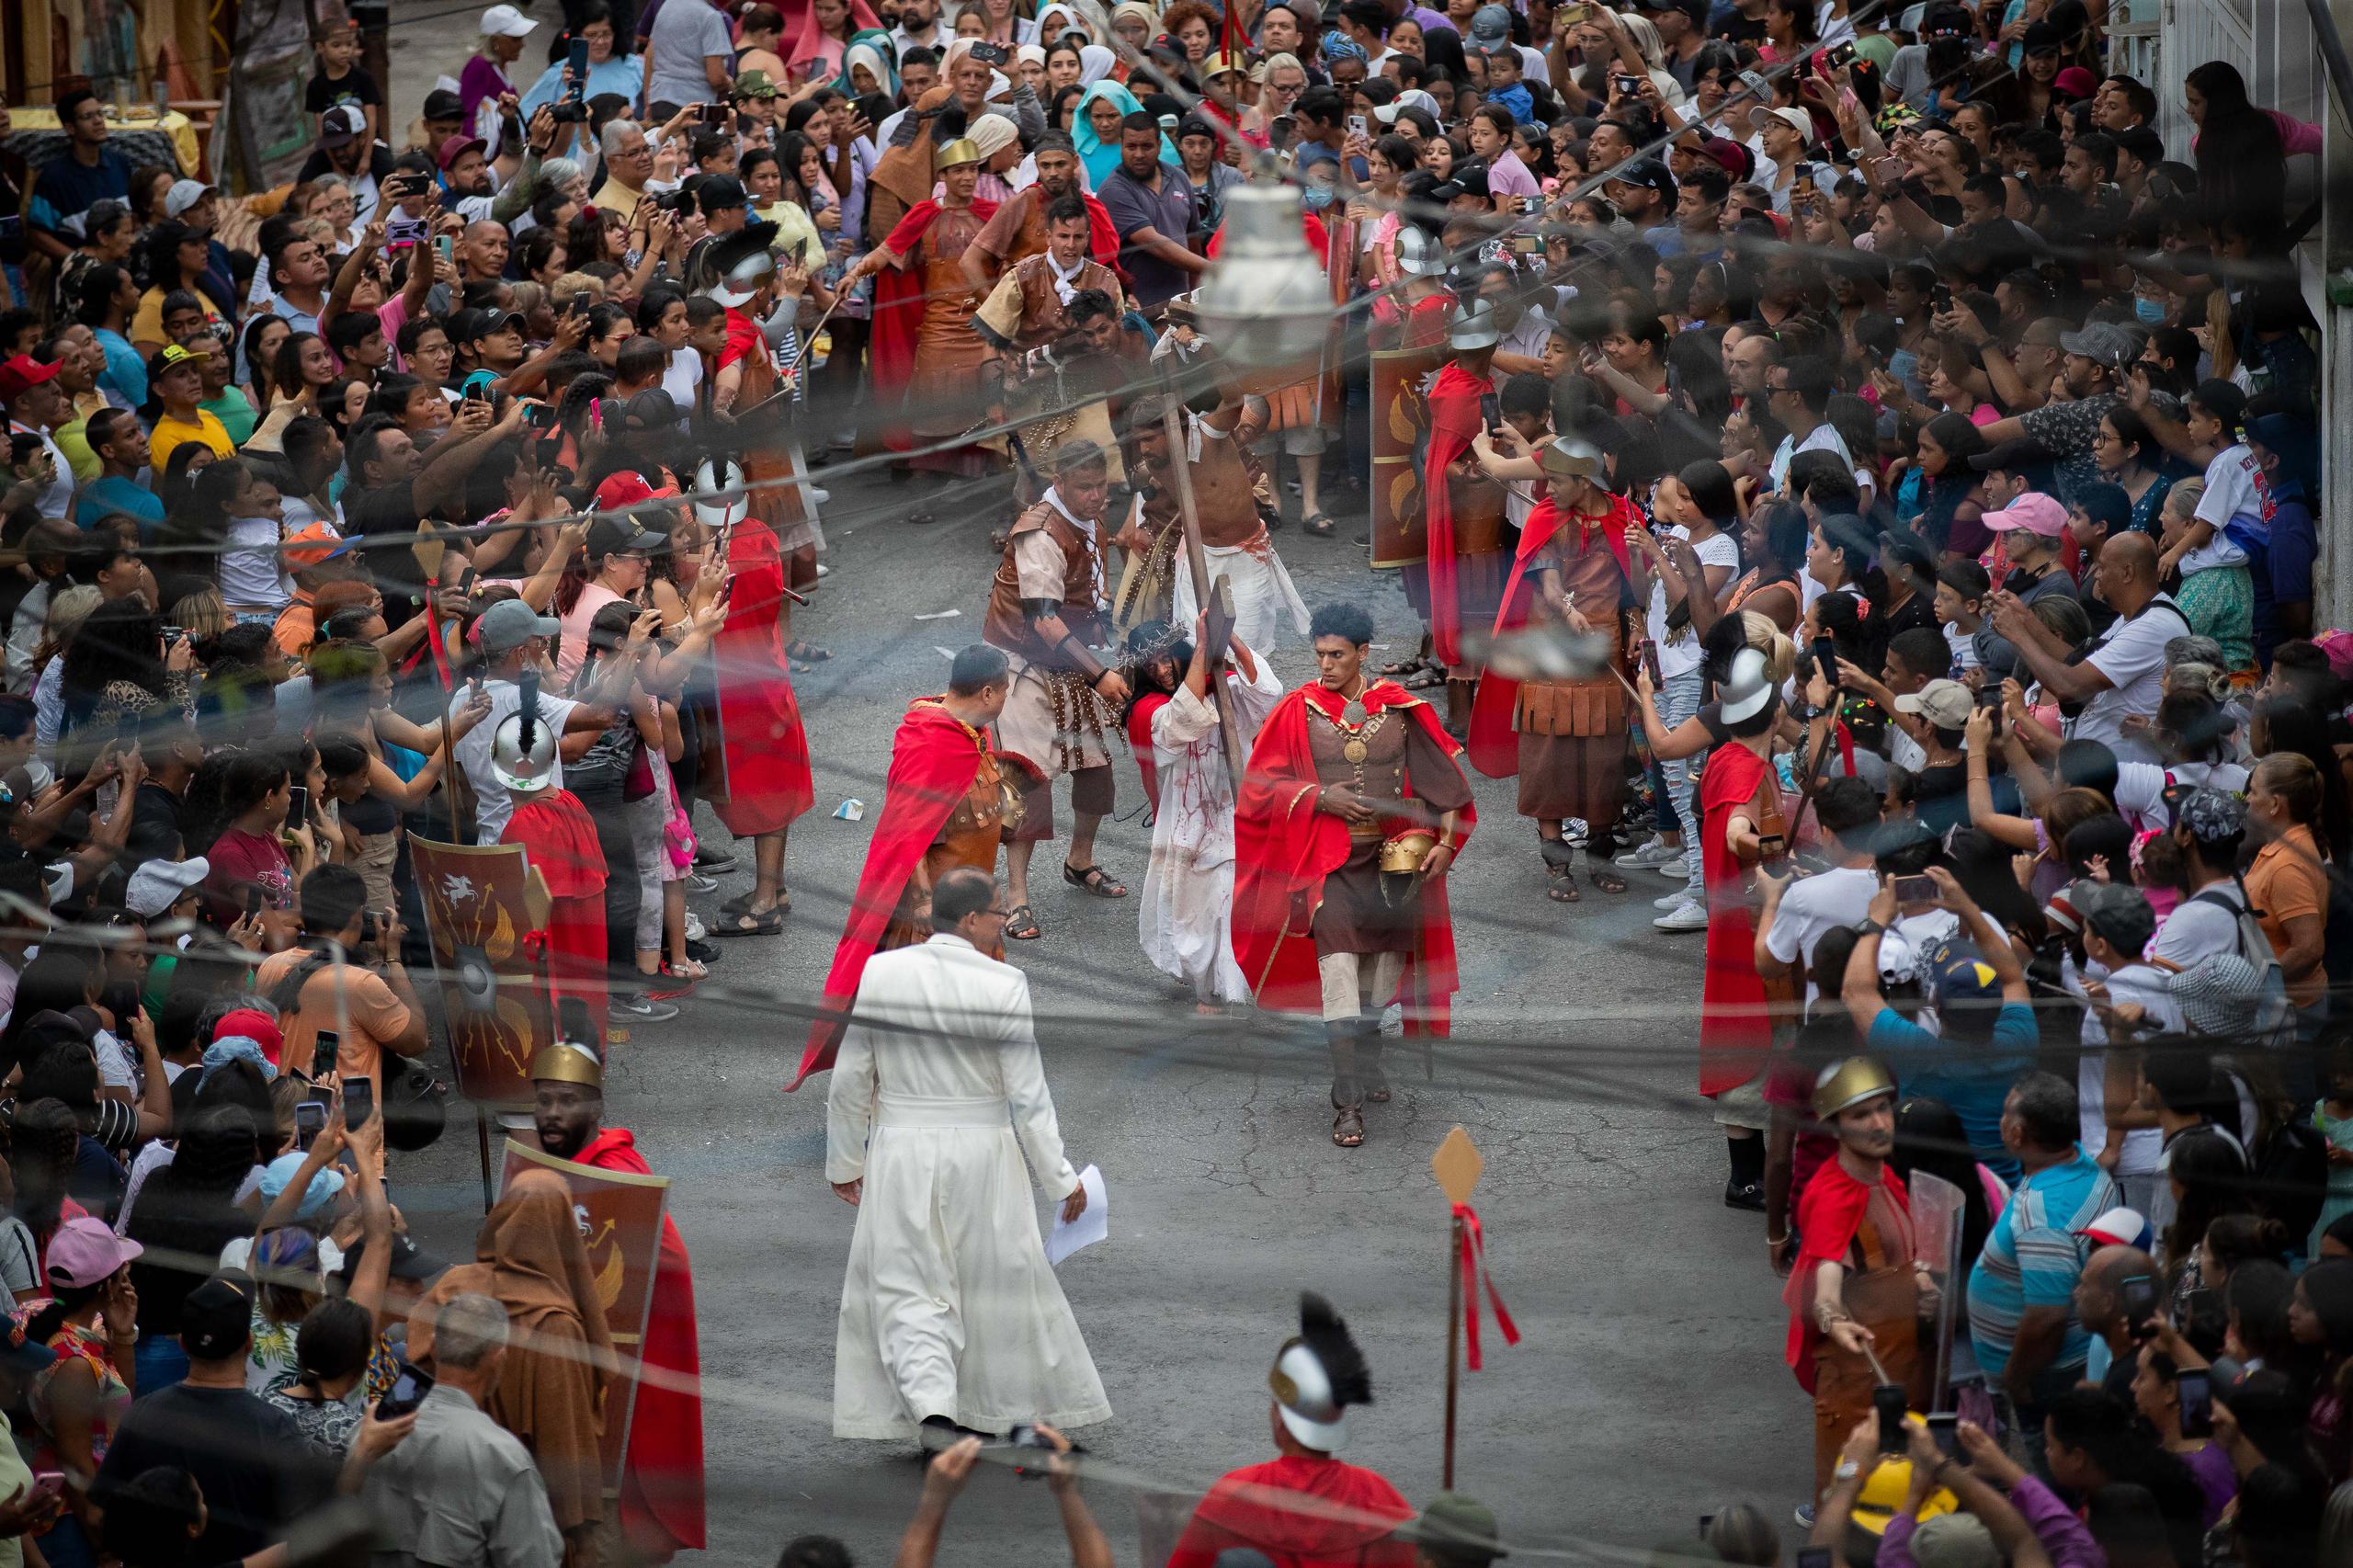 Las procesiones inspiradas en el viacrucis que vivió Jesús camino al calvario, no faltan en algunas de estas celebraciones.